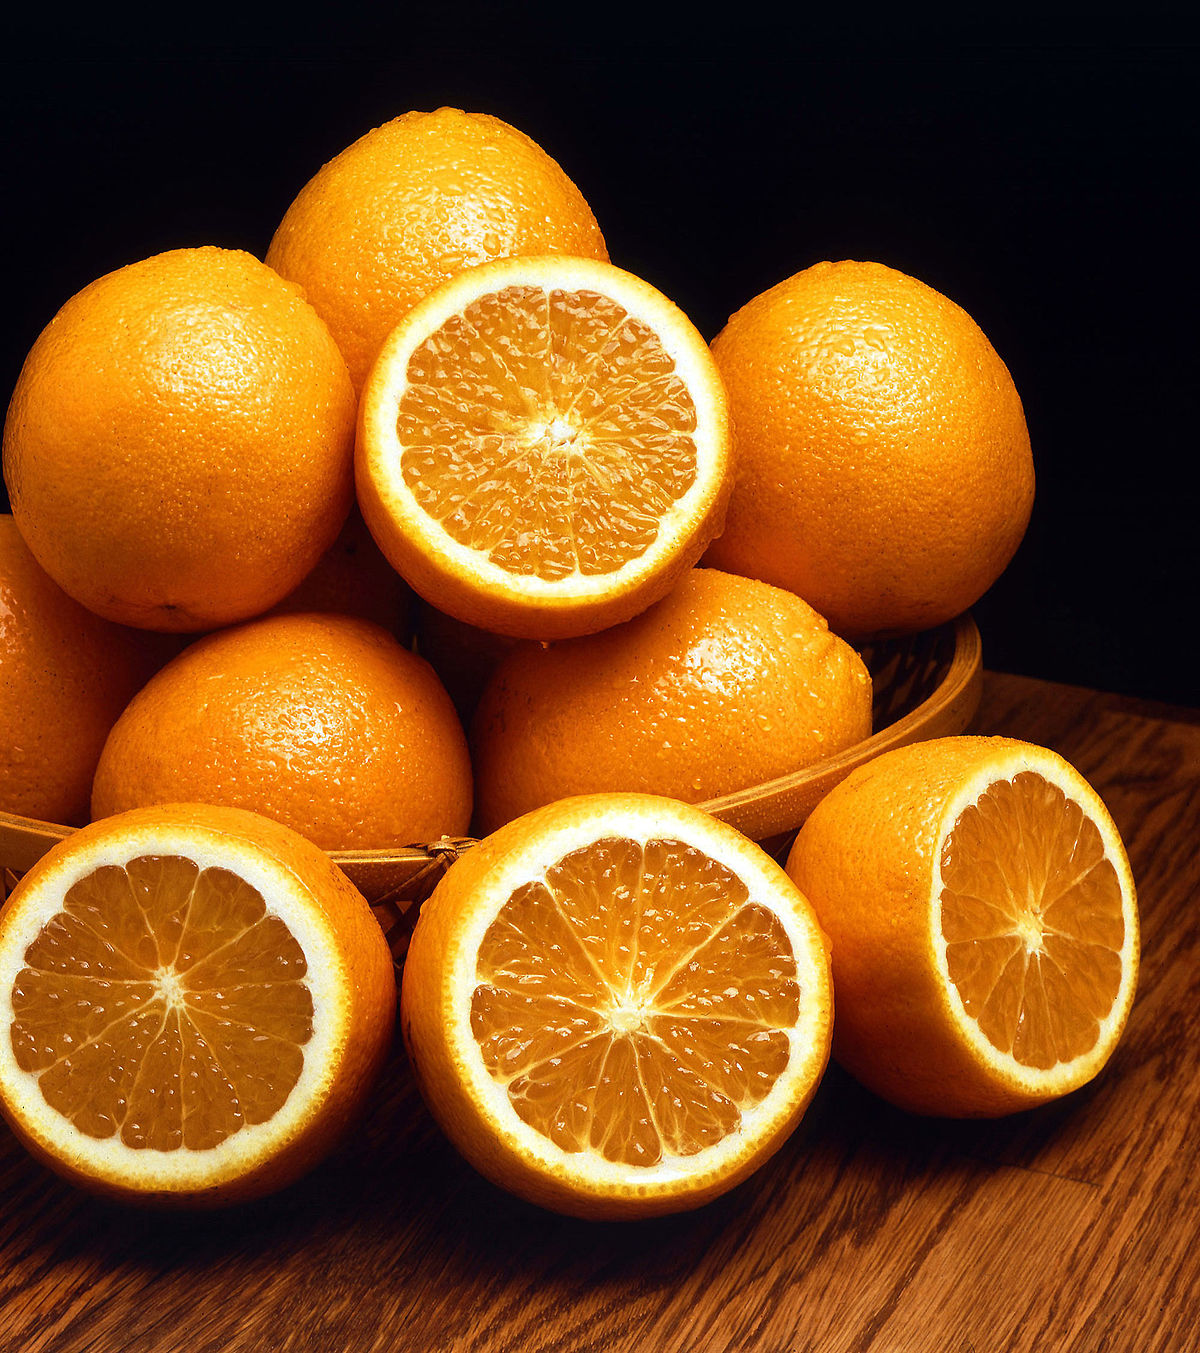 Trái cam mọng nước không chỉ chứa nhiều vitamin C giúp bạn khỏe mạnh, đẹp da mà còn rất hữu ích cho chế độ ăn kiêng của những người có nhu cầu giữ dáng.